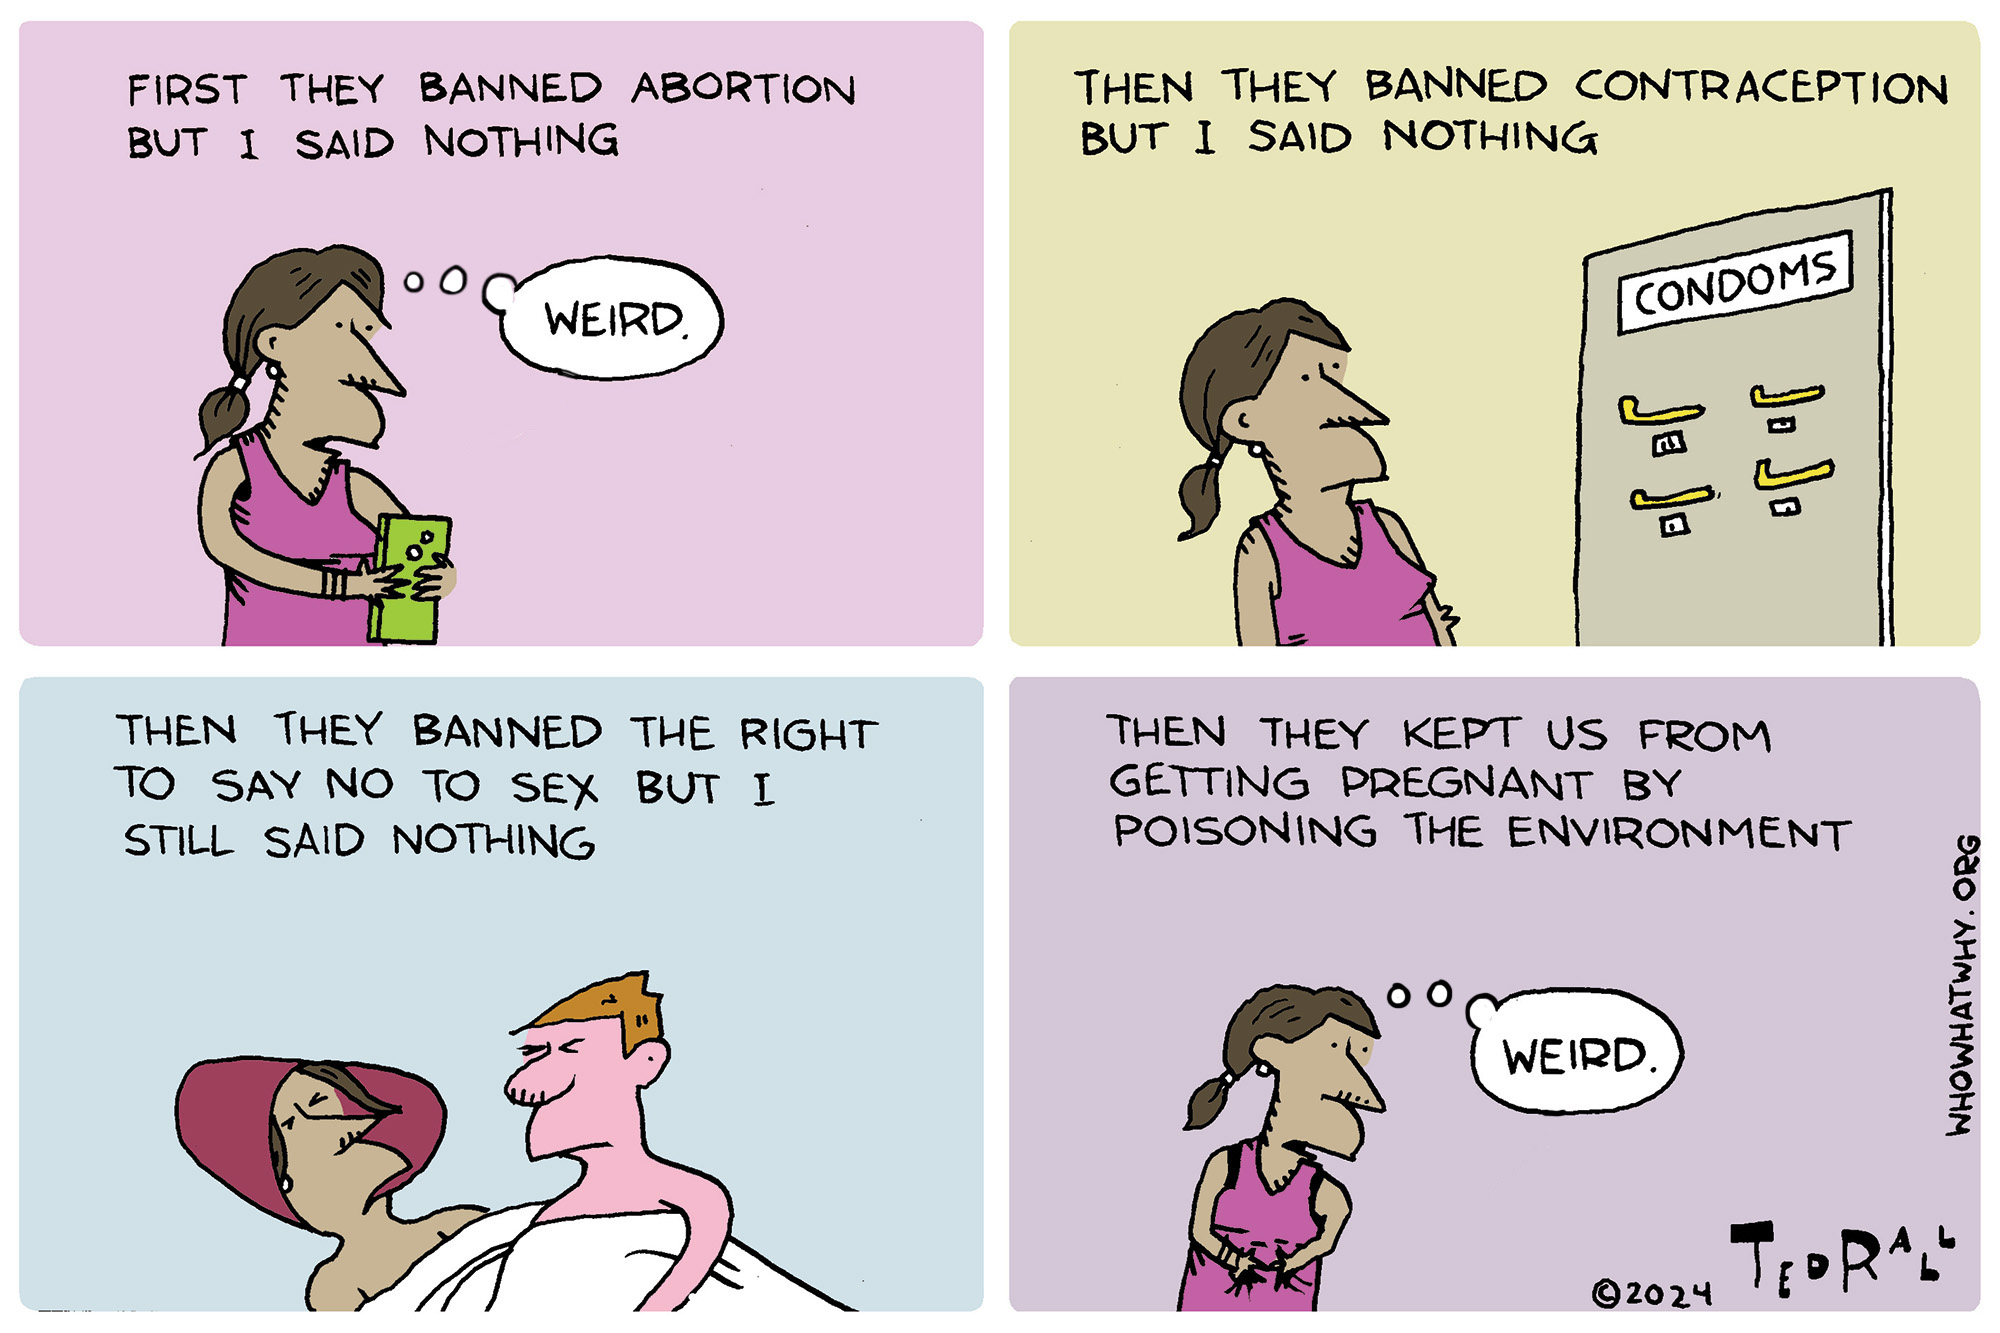 Contraception Bans, environment